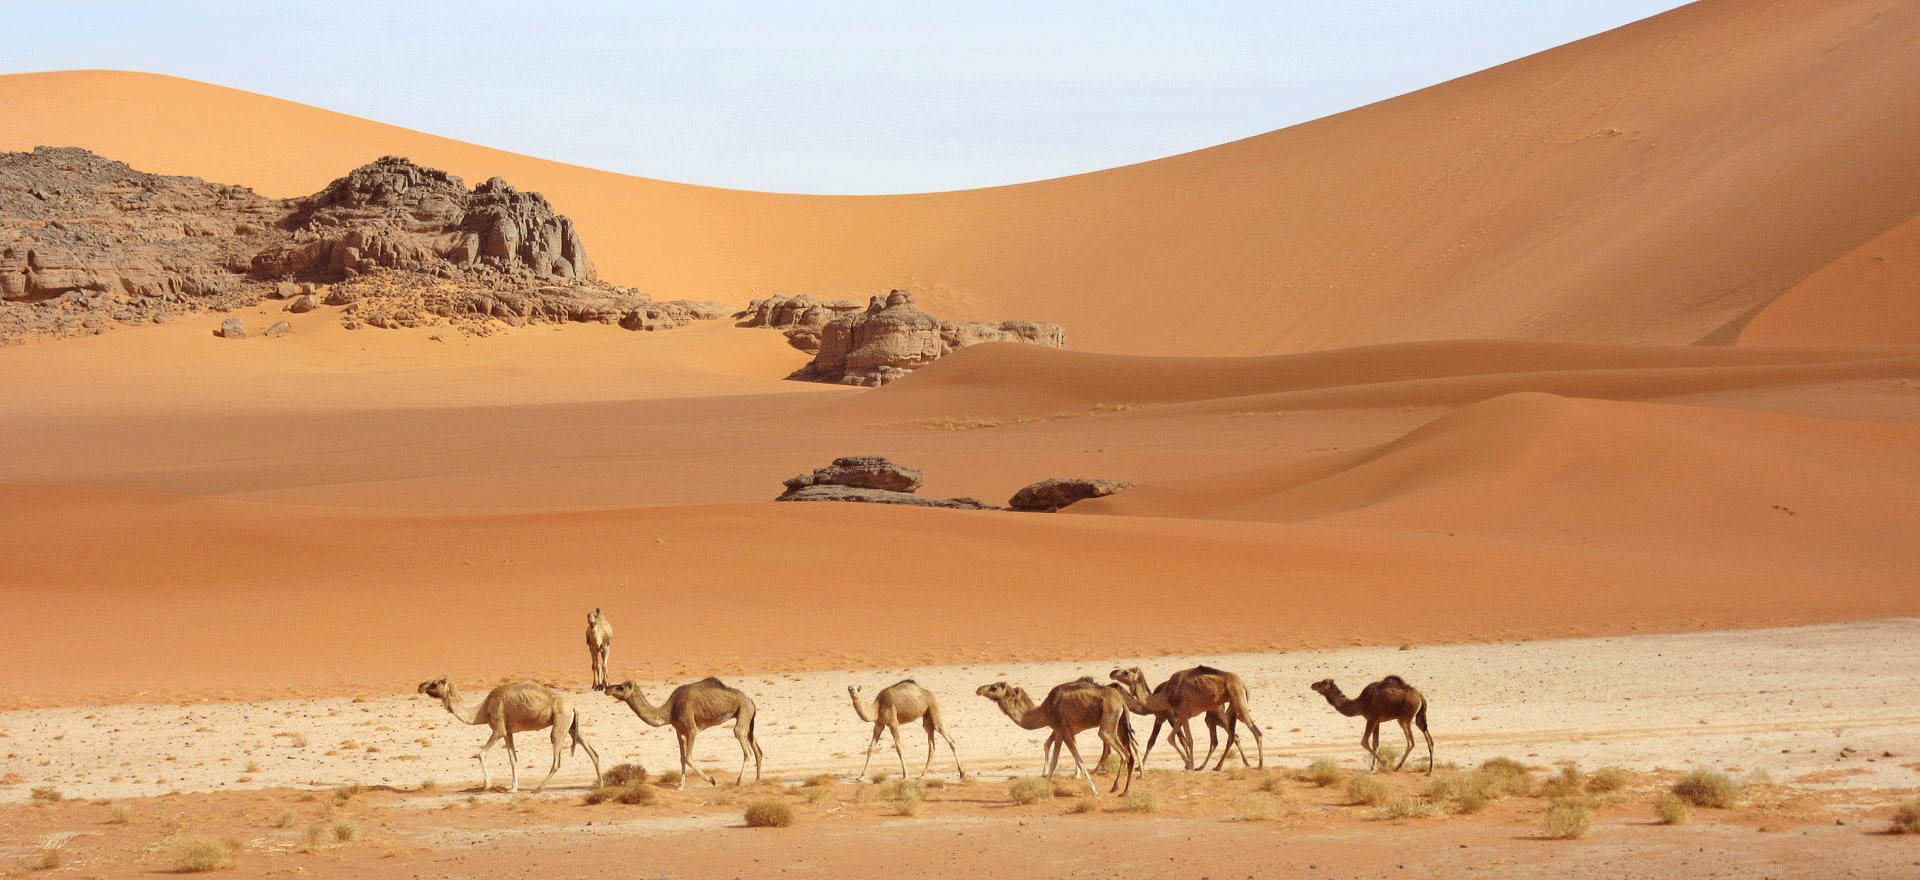 Algeria holidays and tours - The Sahara Desert